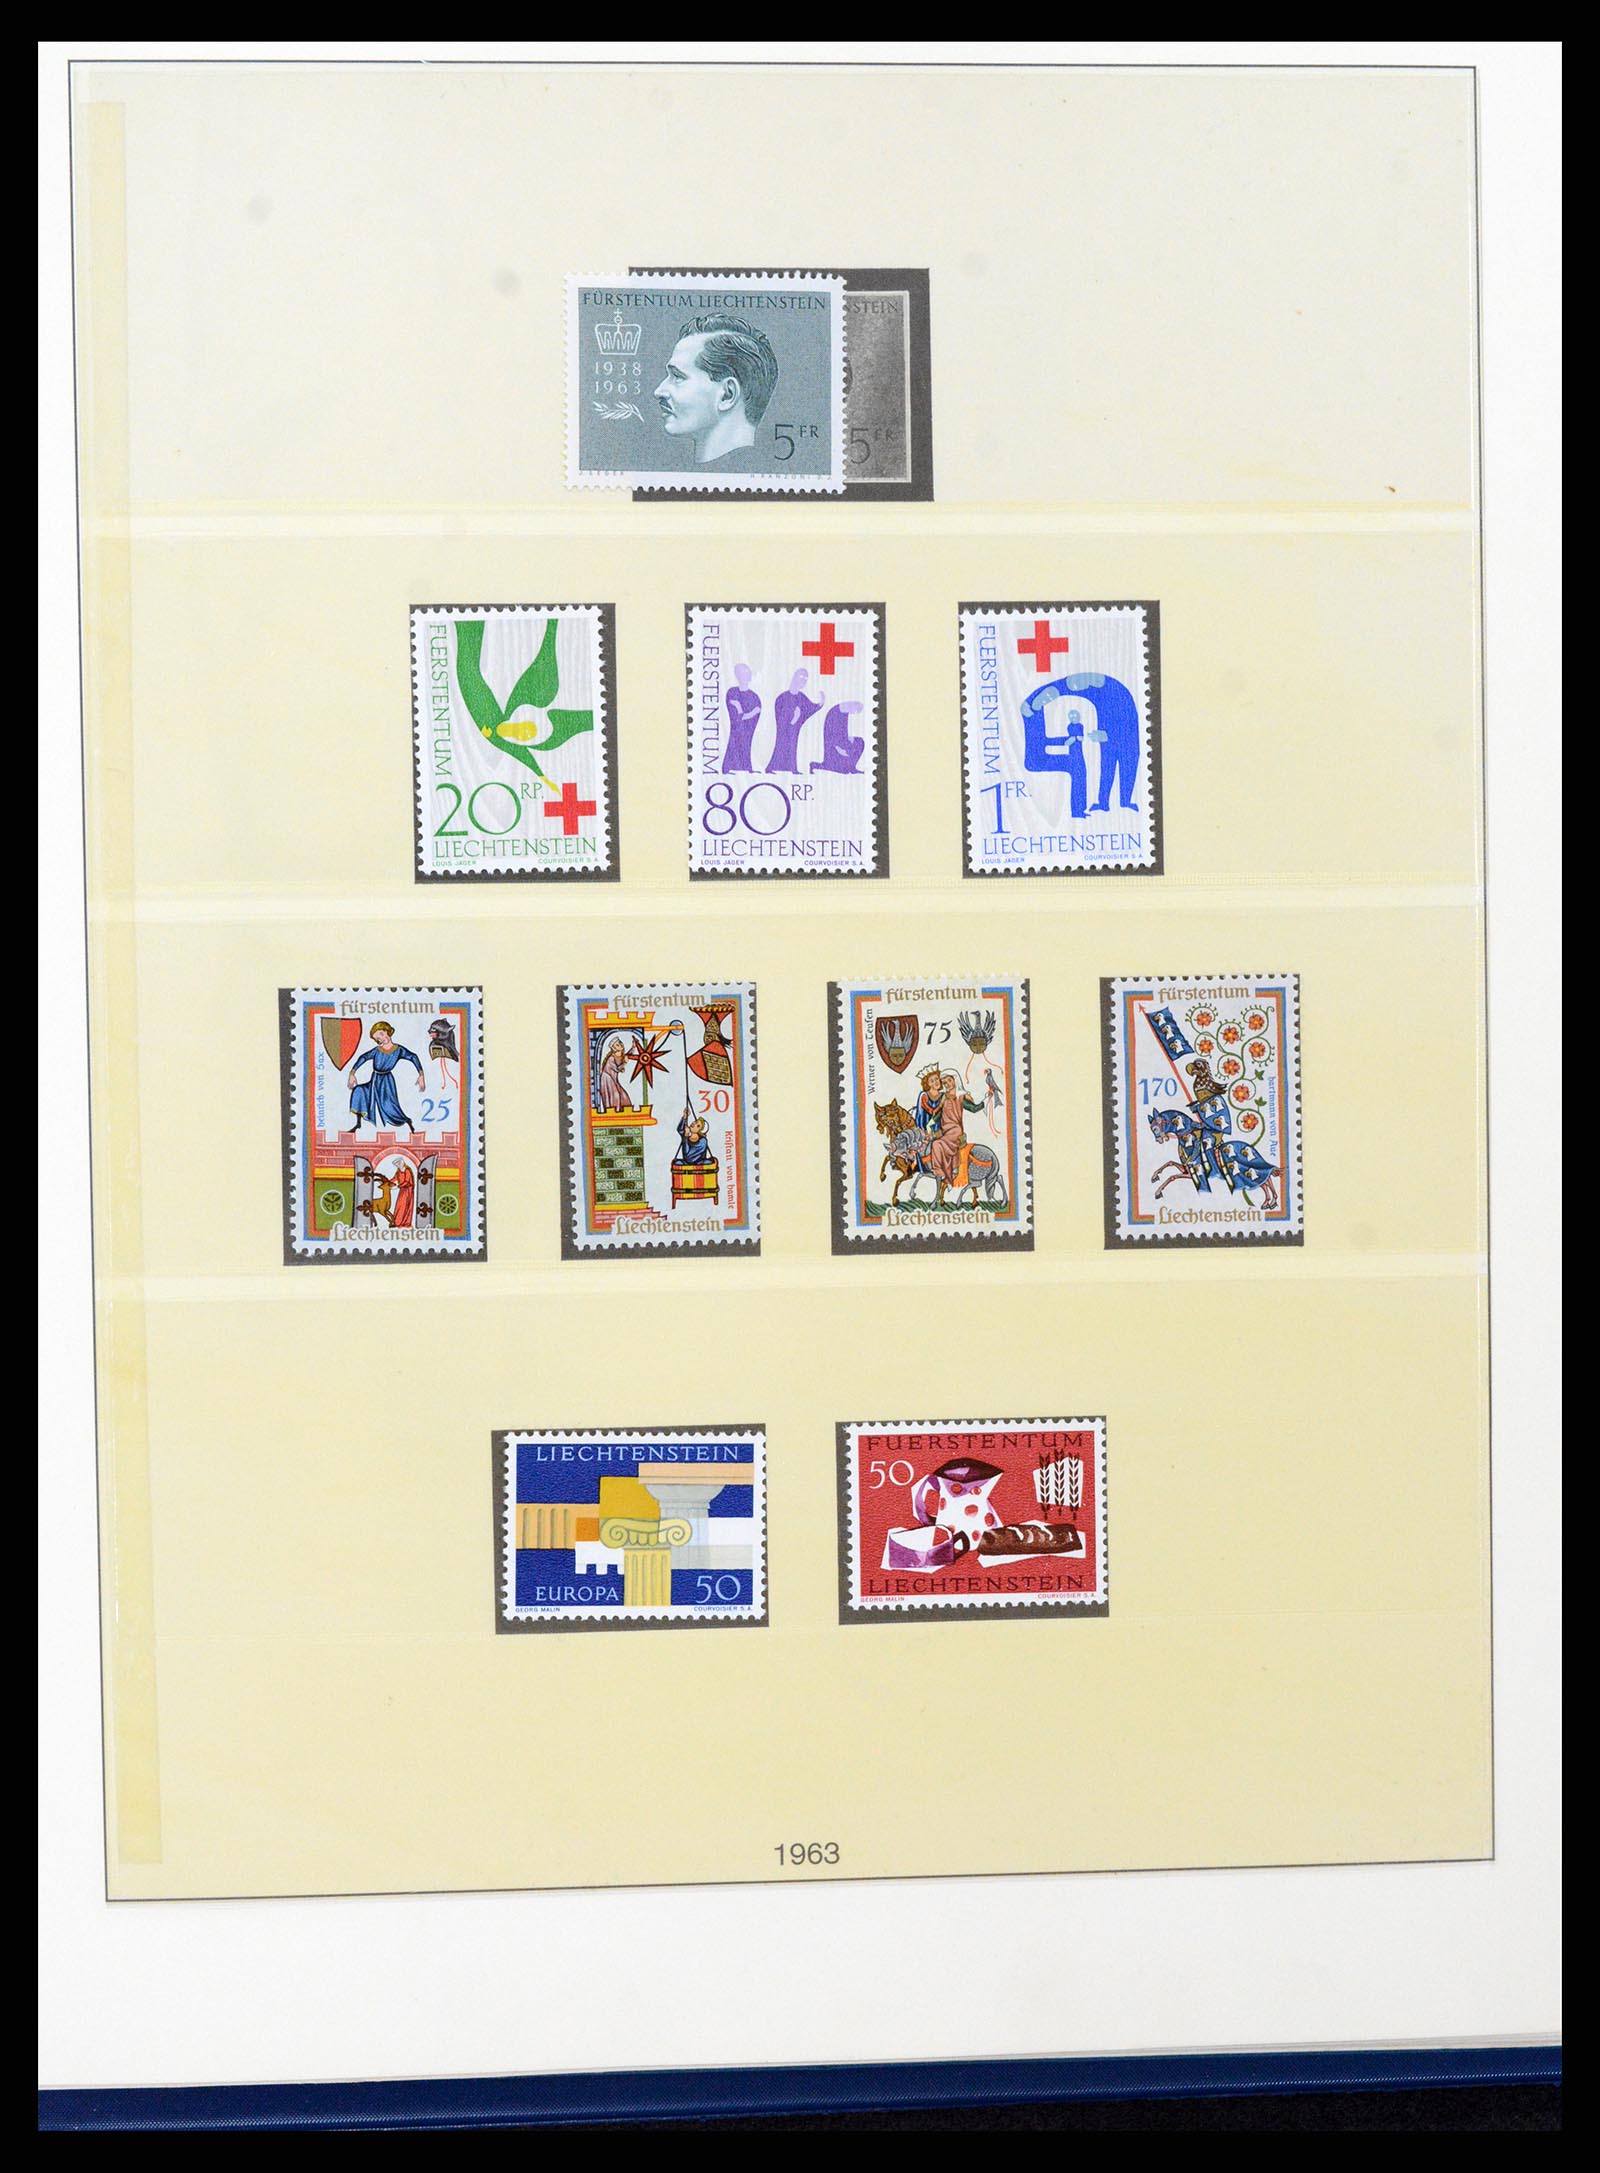 37295 040 - Stamp collection 37295 Liechtenstein 1912-2009.